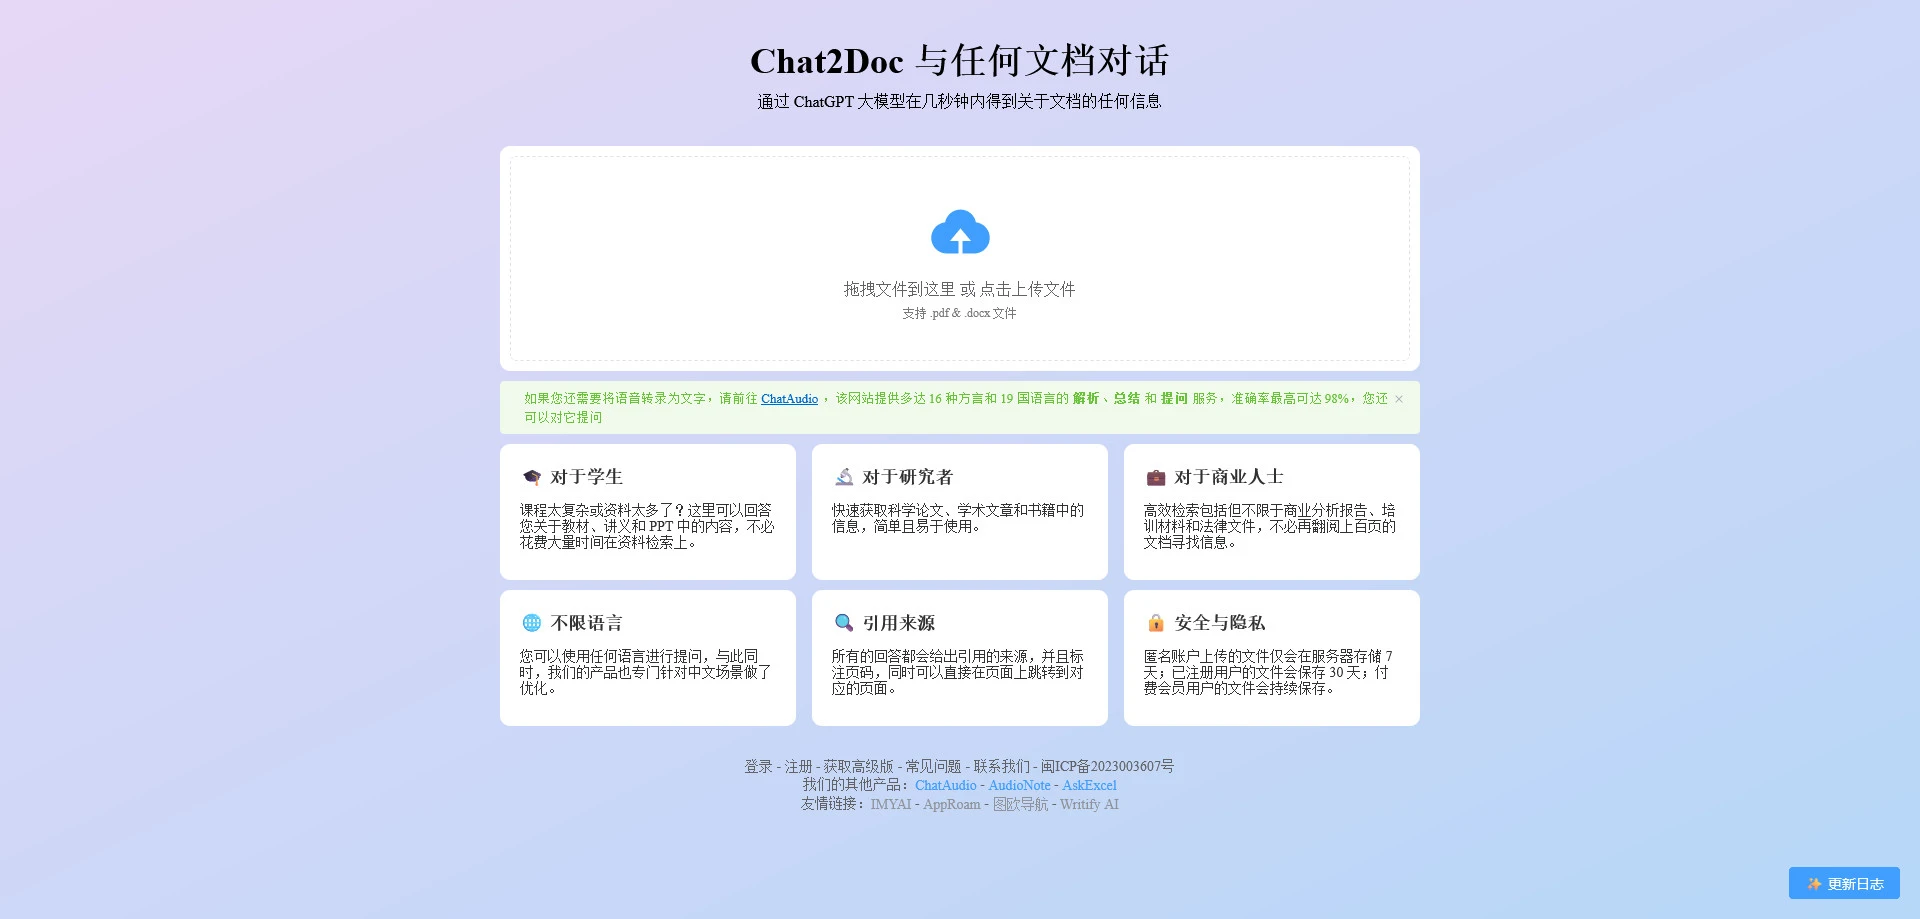 AI工具与服务推荐 - Chat2Doc - AI文档阅读辅助工具 - 特色图片